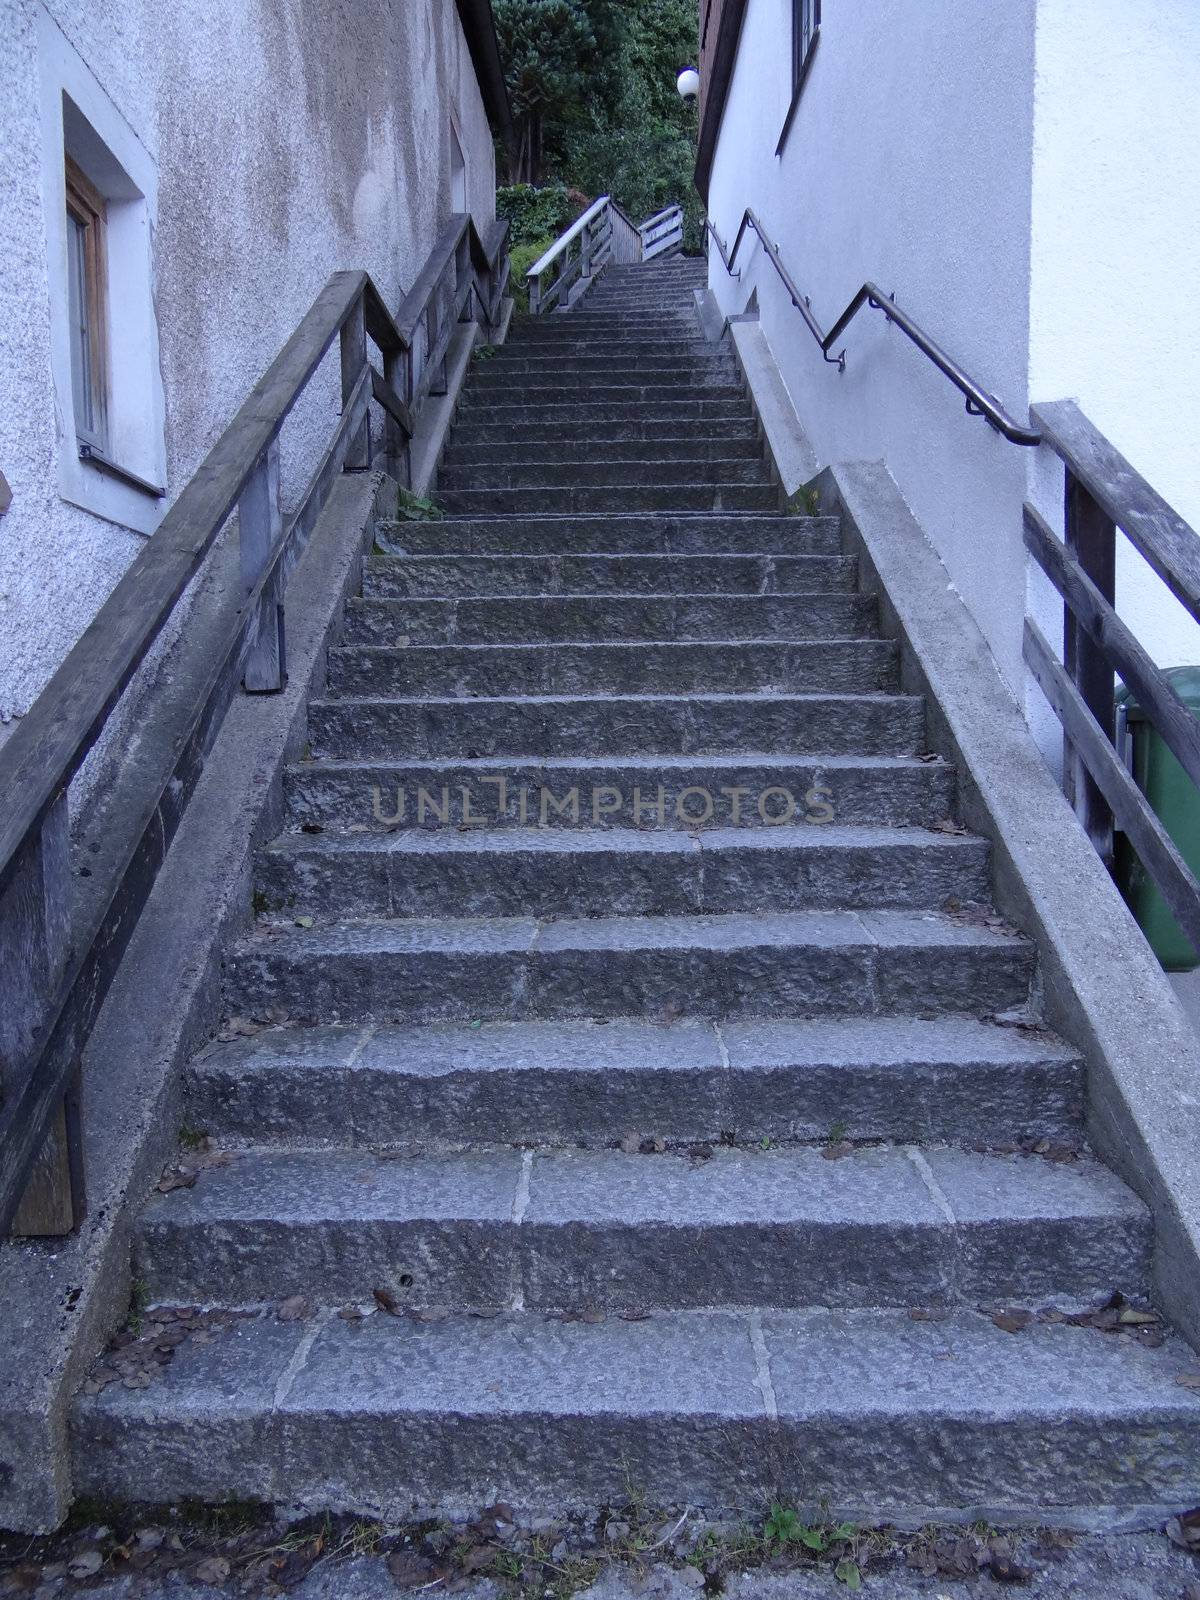 Historic stairway in Hallstatt, Austria